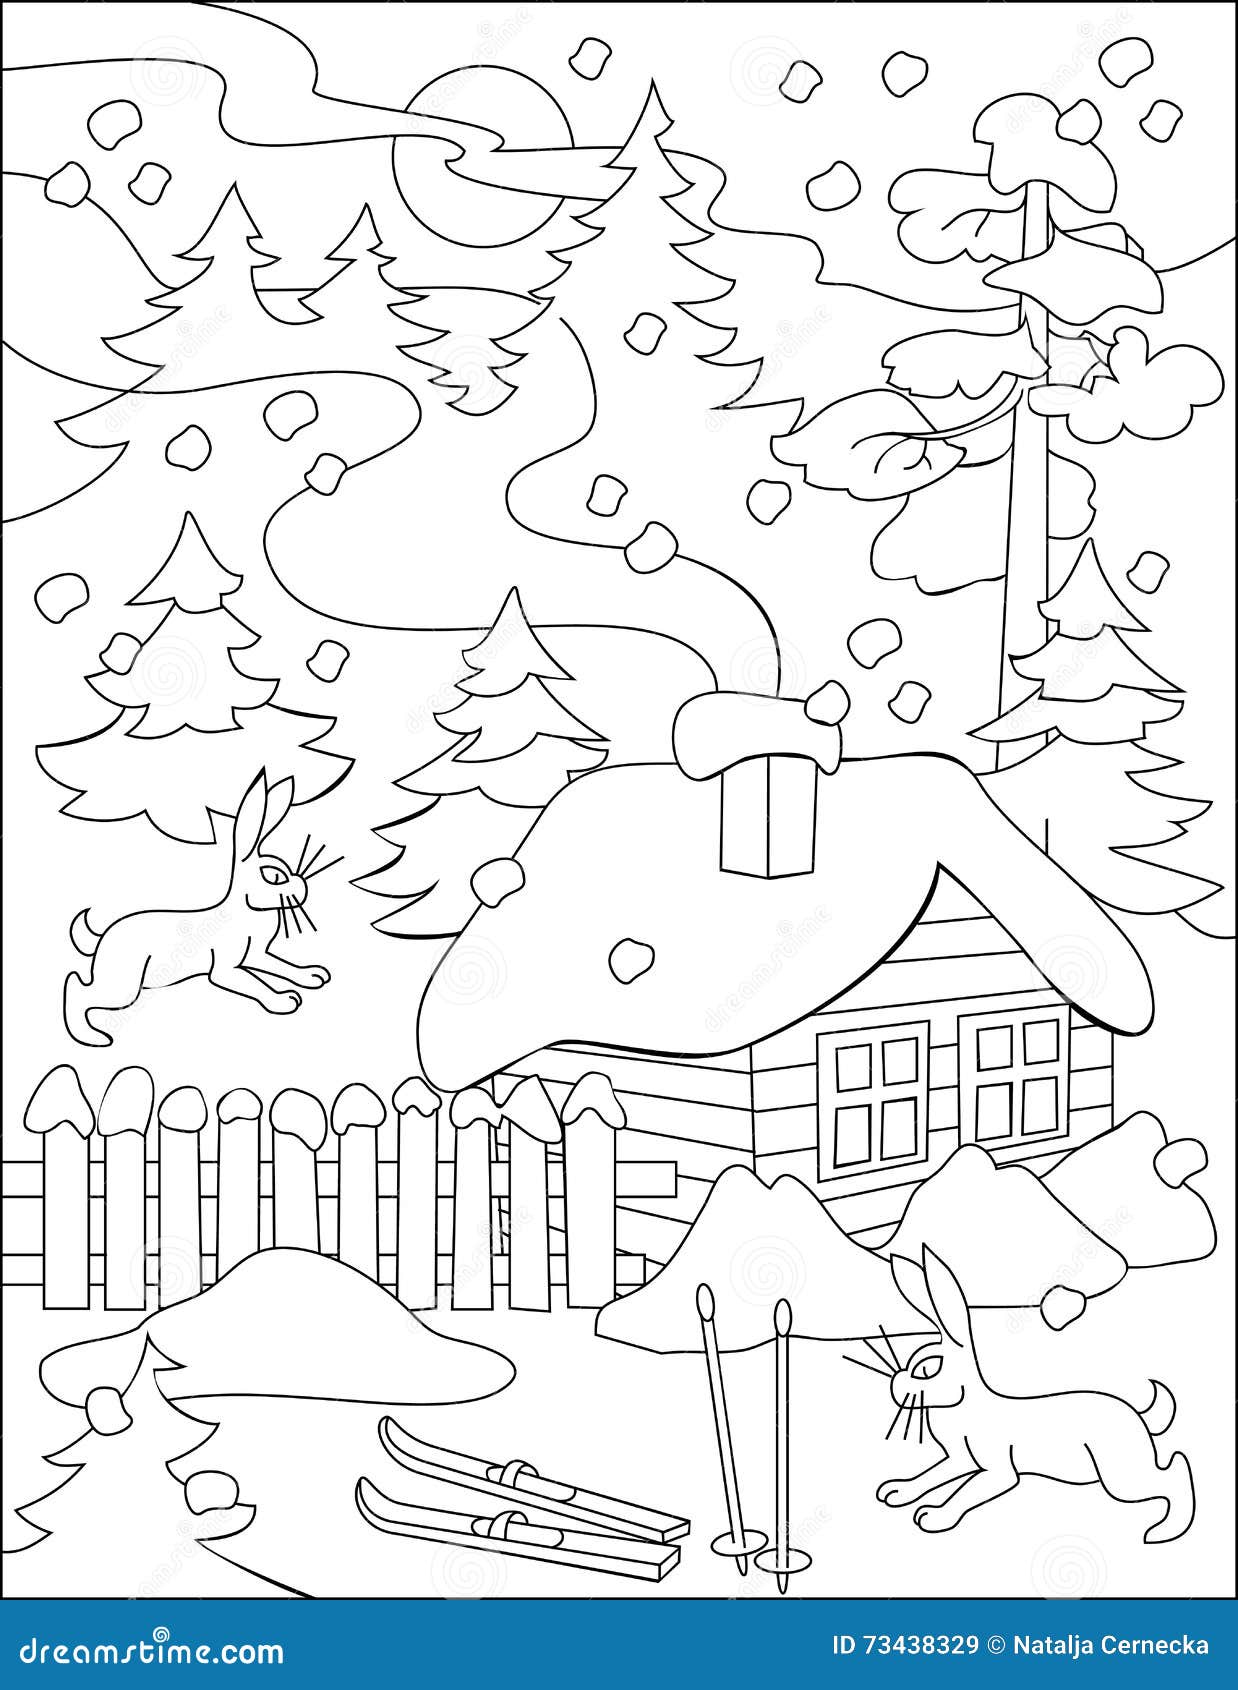 pagina met zwartwitte tekening van de winter voor het